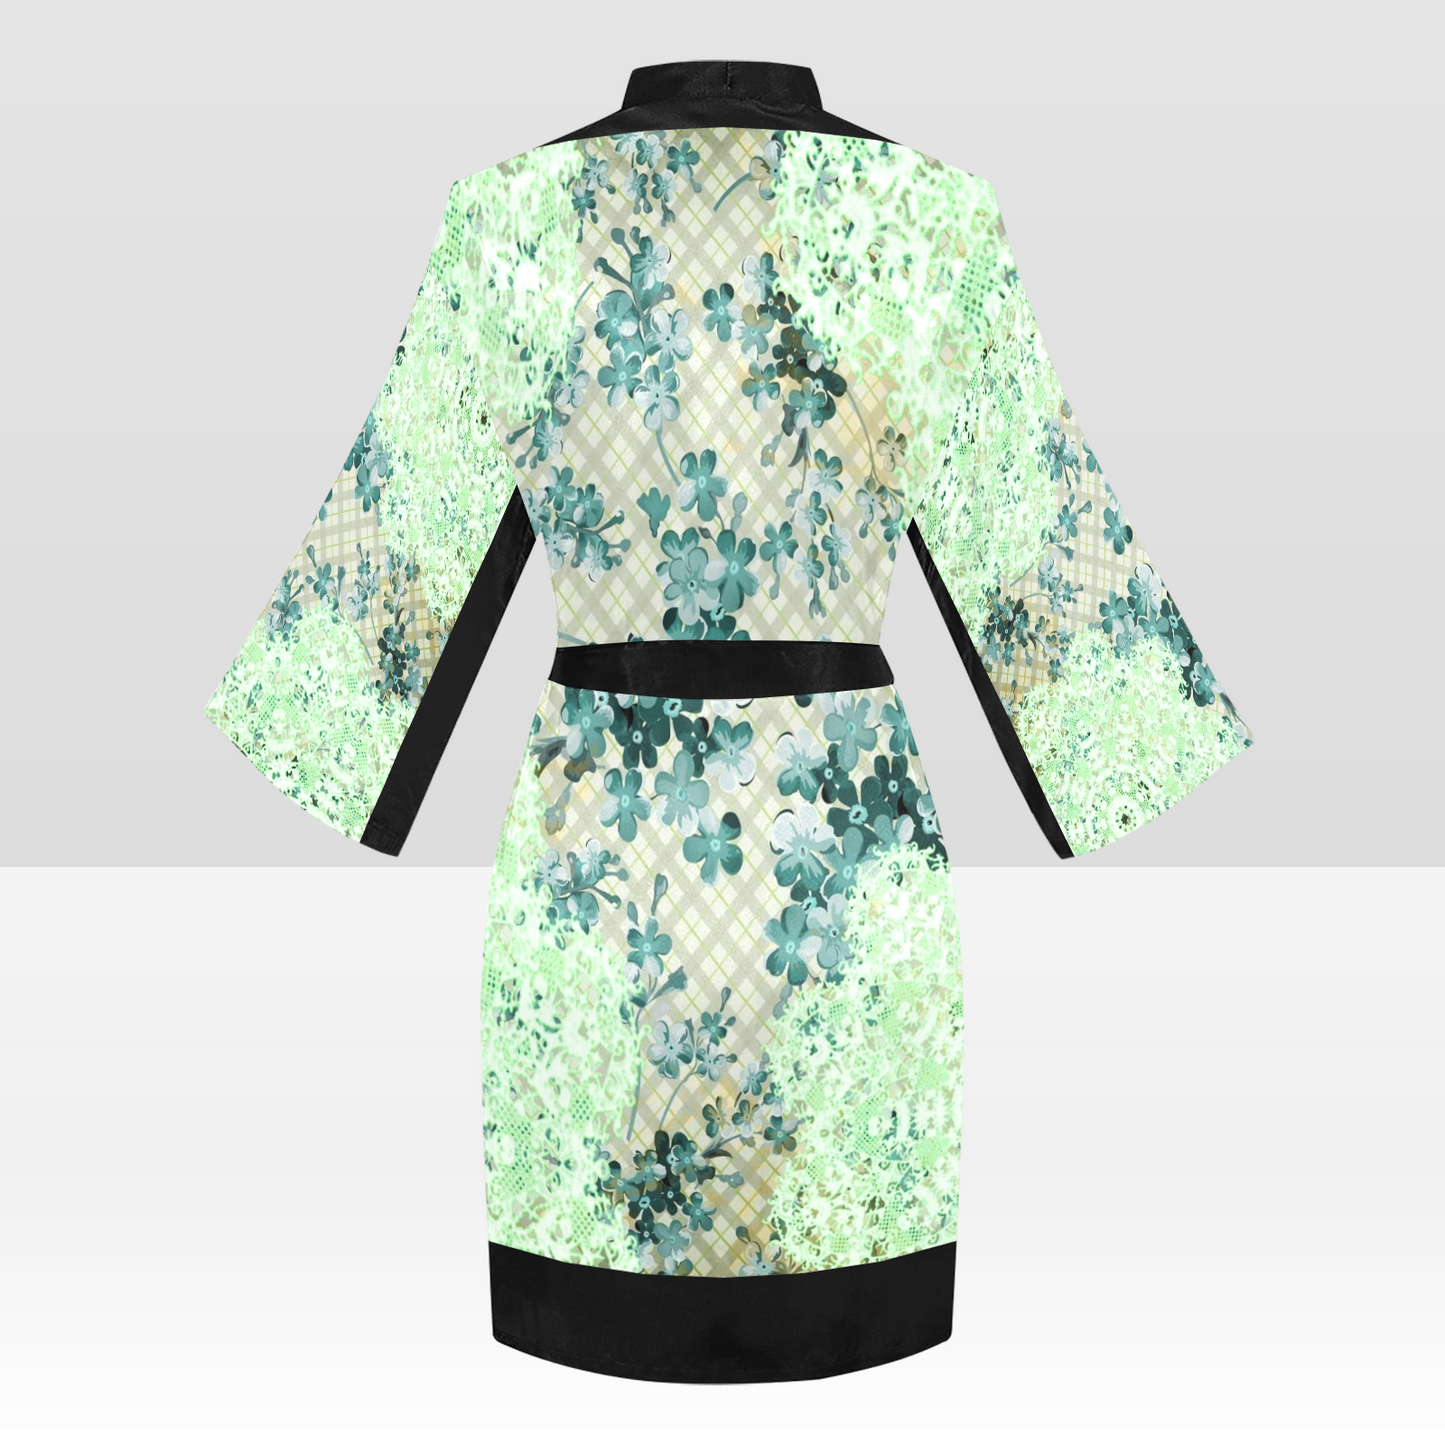 Victorian Lace Kimono Robe, Black or White Trim, Sizes XS to 2XL, Design 53